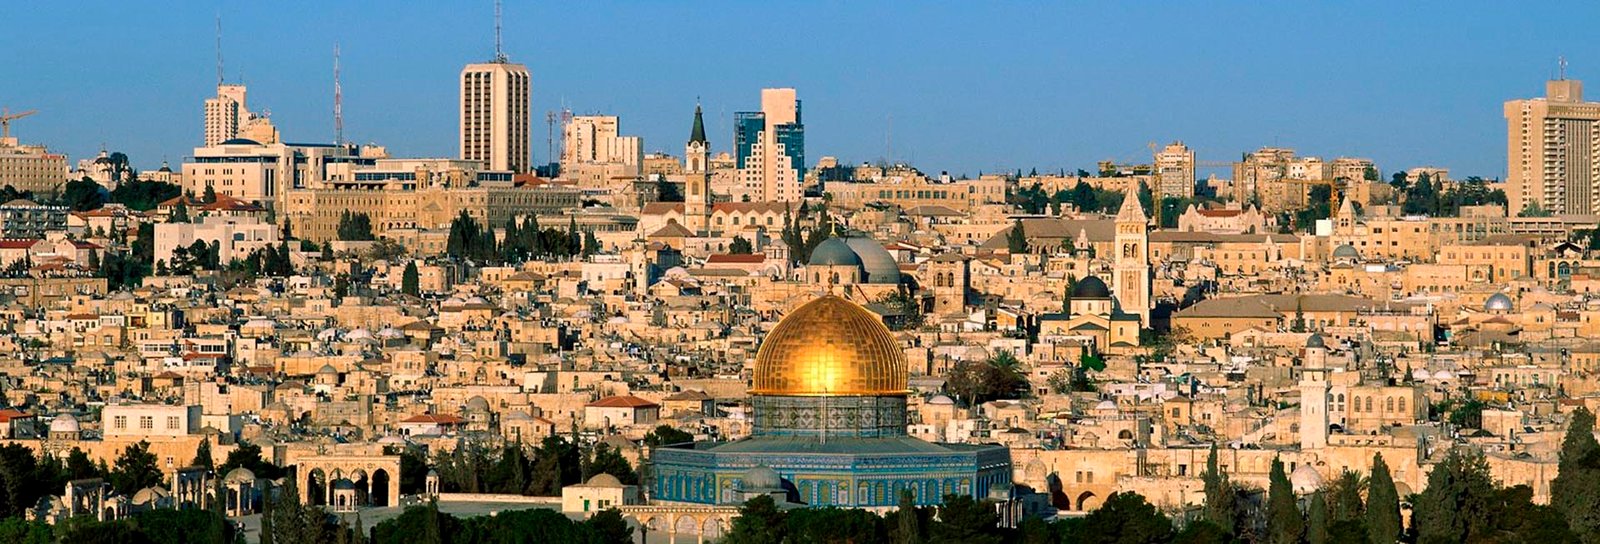 Lição 1 - Jerusalém e Galileia: as terras onde Jesus viveu - SLIDES E VIDEOAULAS